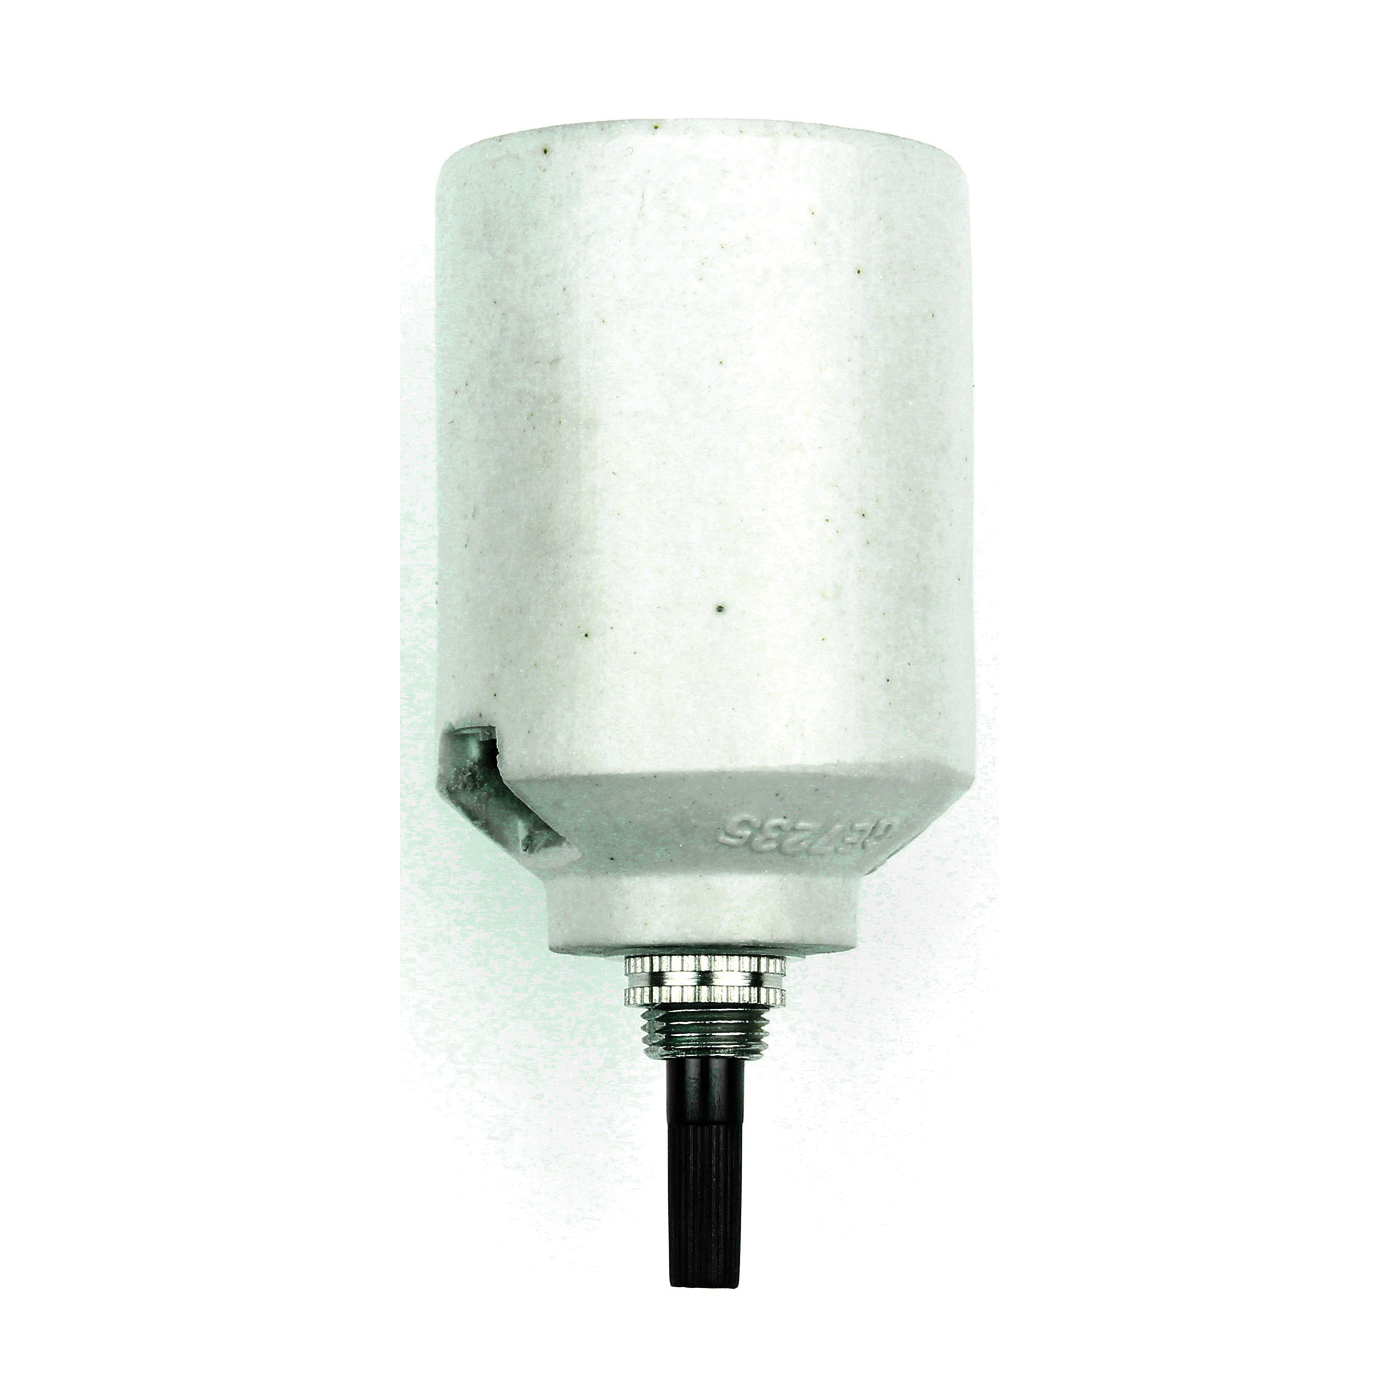 60578 Bottom Turn Knob Lamp Socket, 250 V, 250 W, Porcelain Housing Material, White